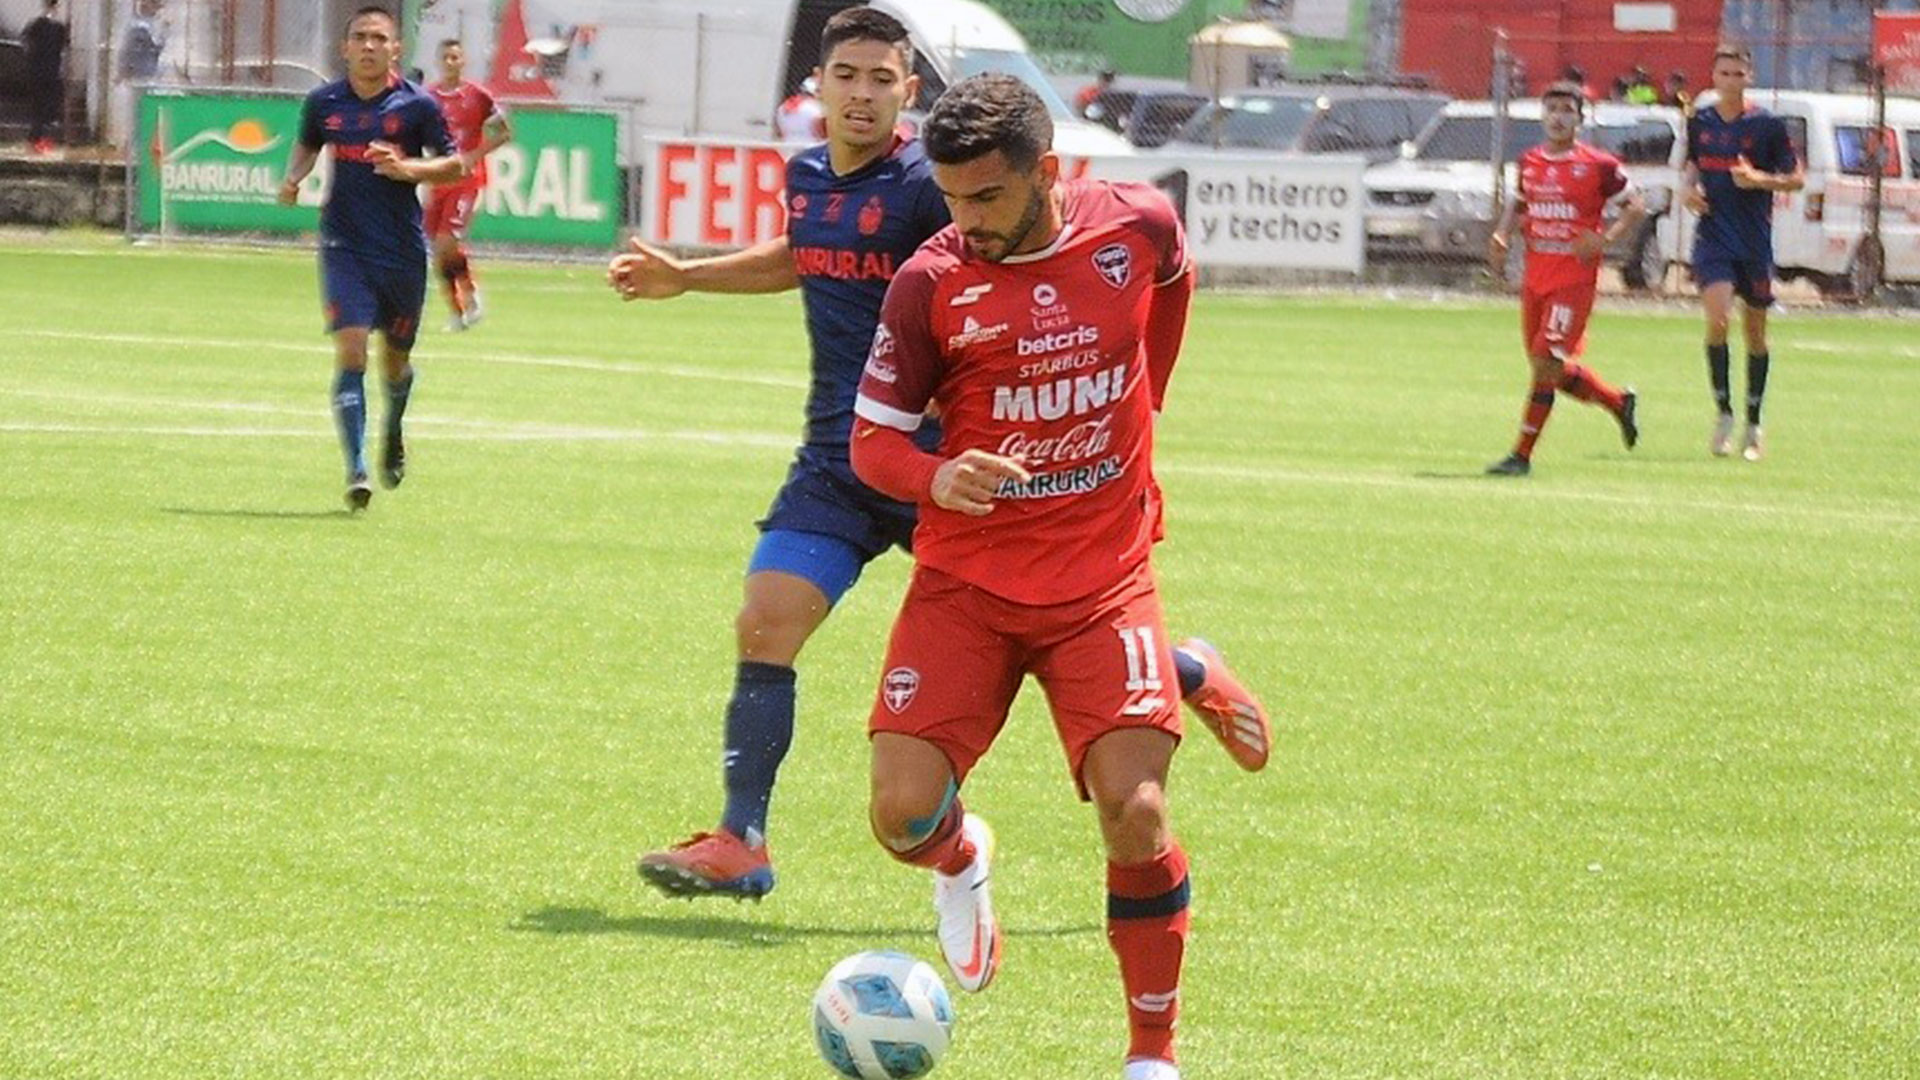 El jugador de Malacateco Matías Rotondi (rojo) gana el balón ante la marca de un rival. (Foto Prensa Libre: Liga Nacional Facebook)